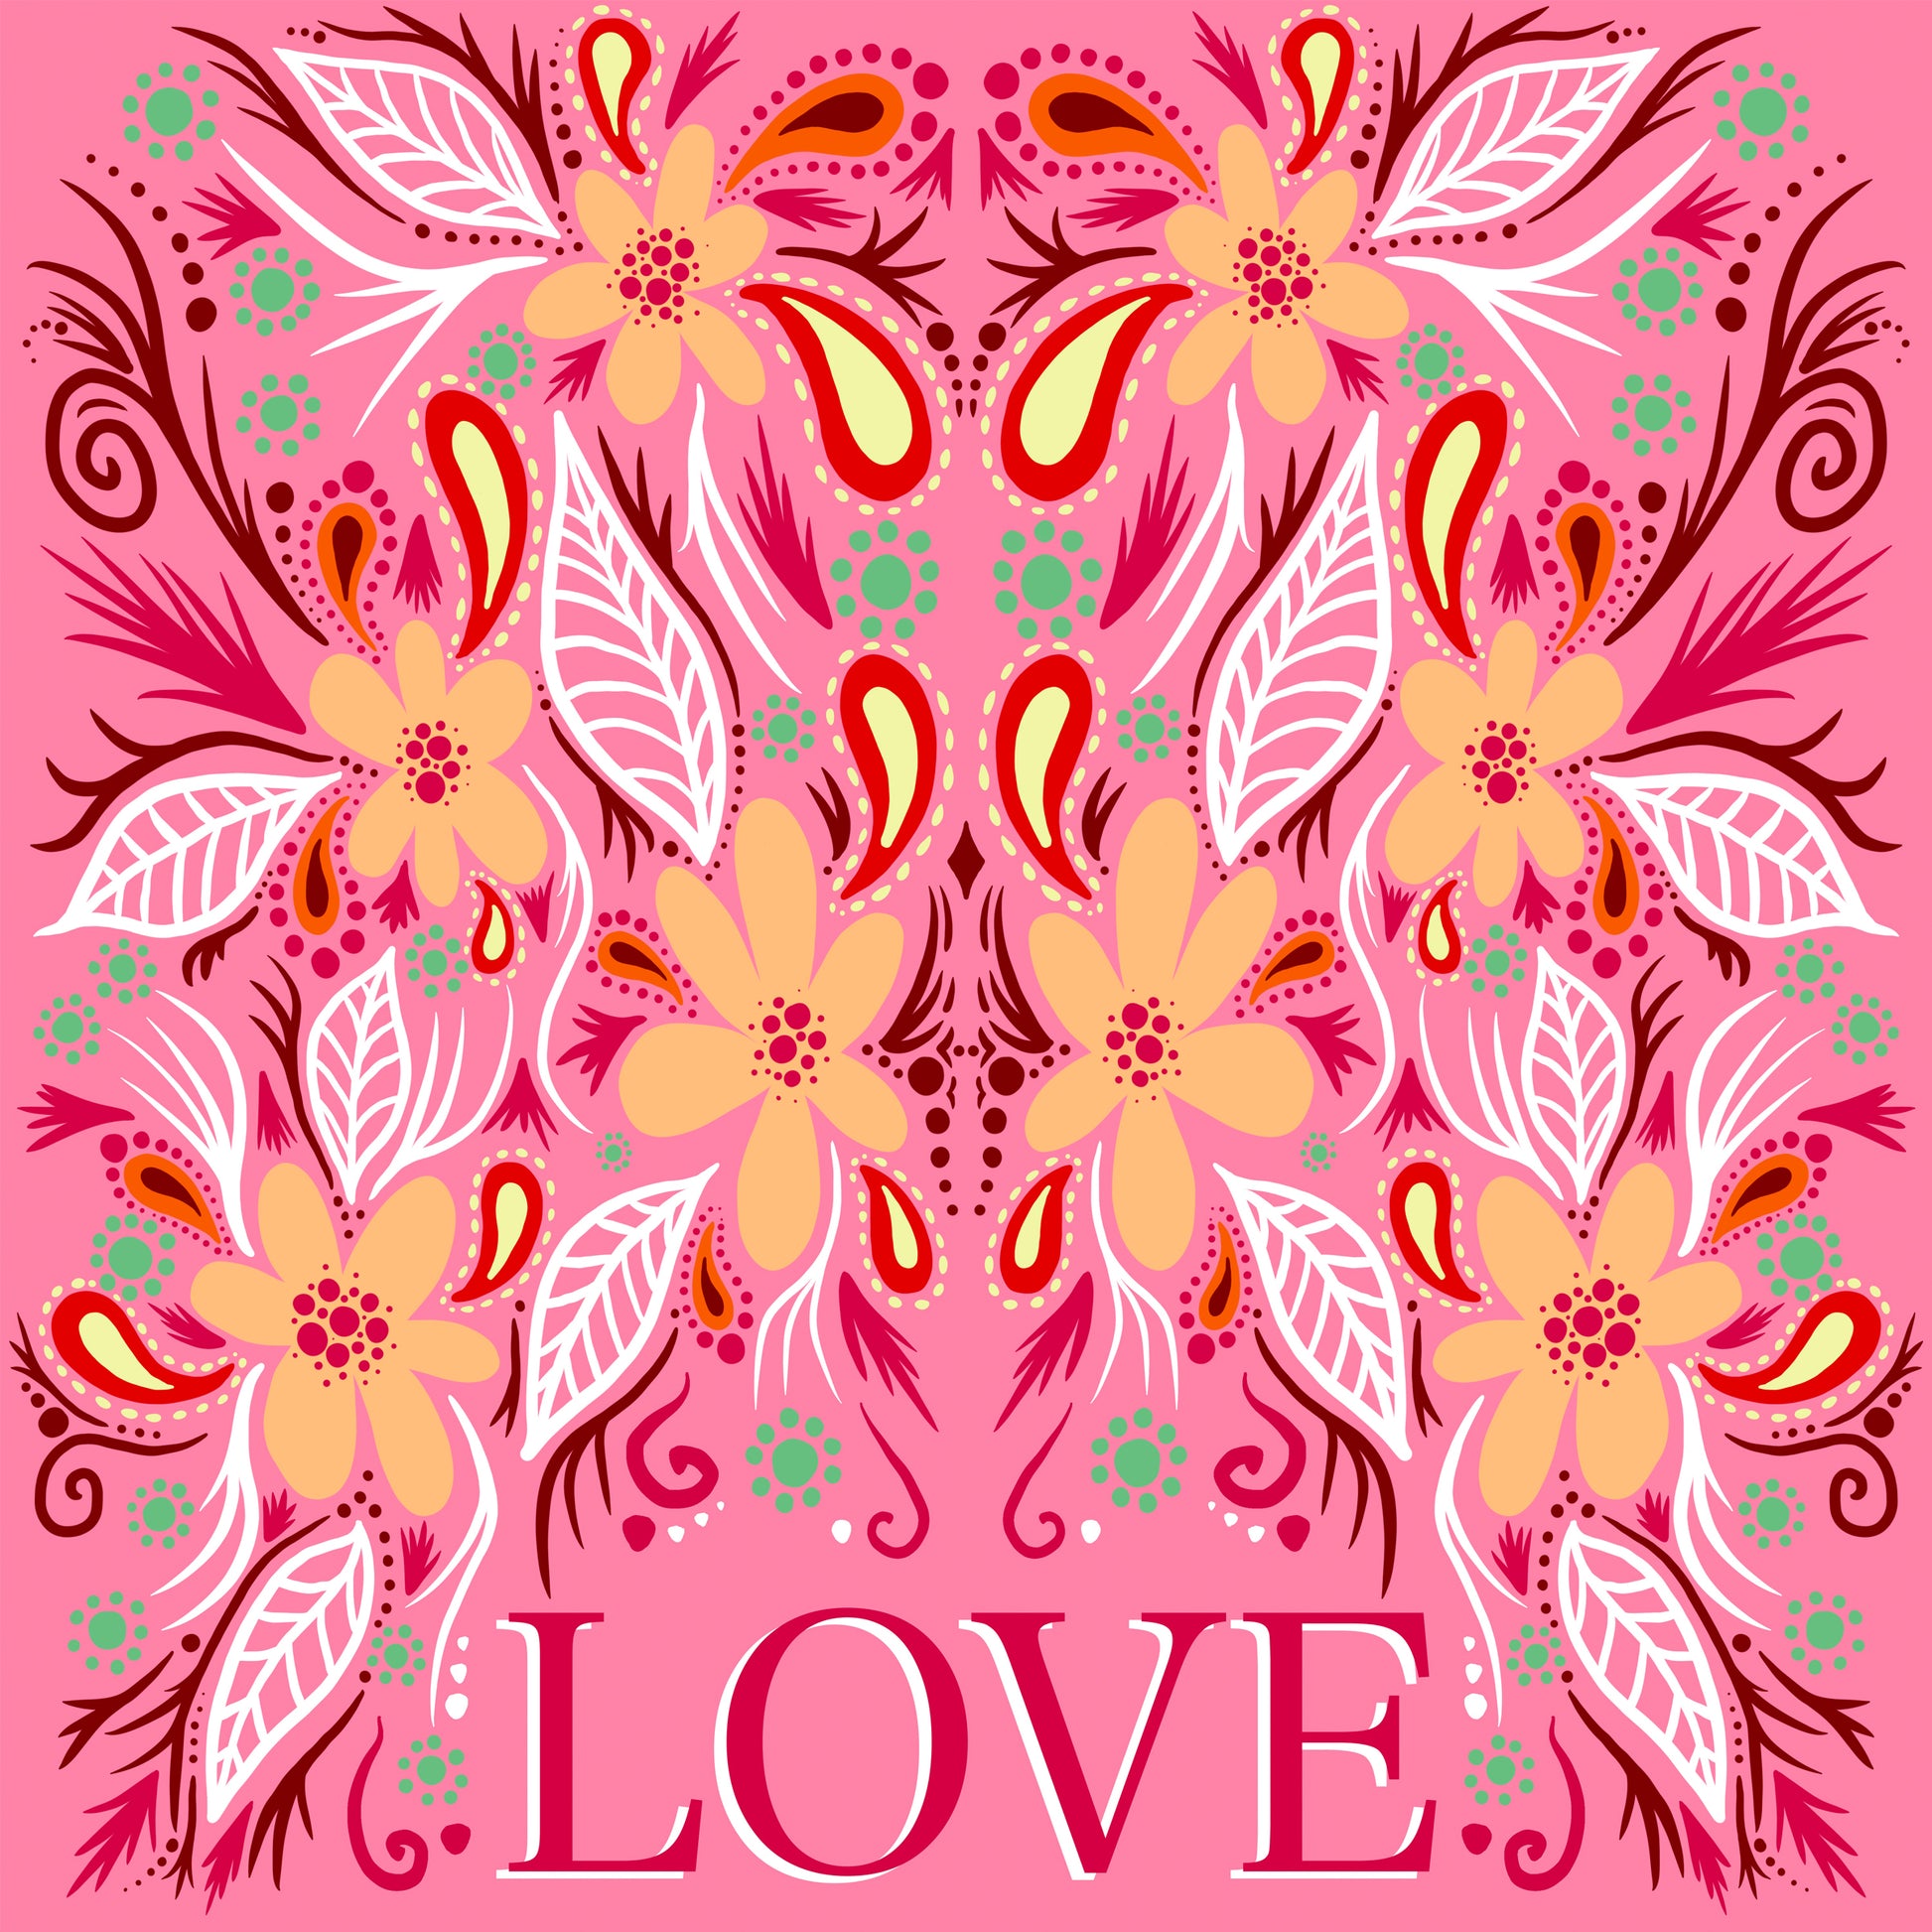 Love In Bloom Card-Blank - marjorieblume